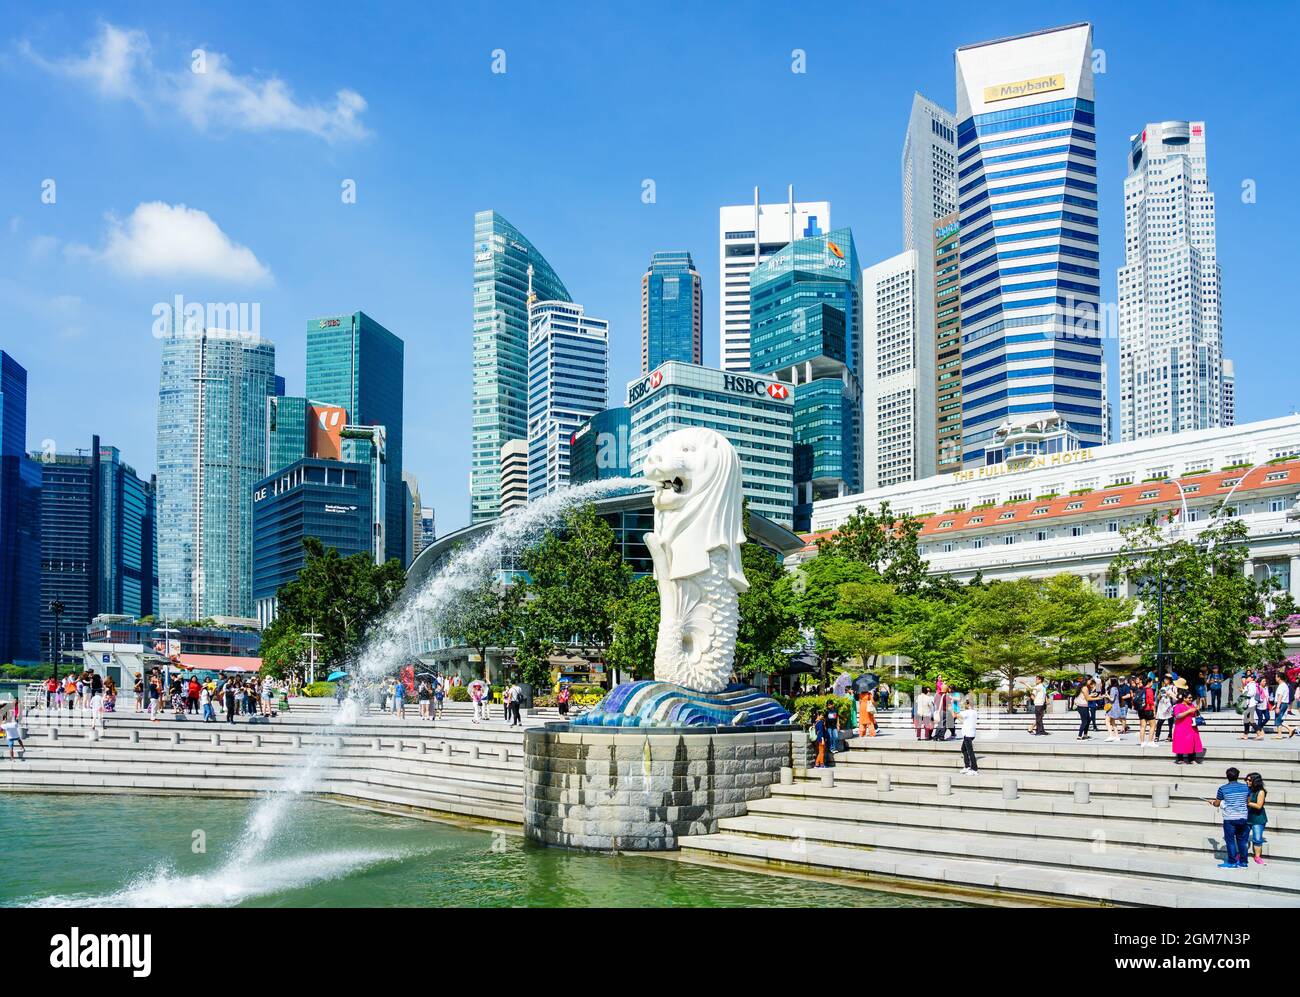 SINGAPOUR - 17 AVRIL 2018 : fontaine de la statue de Merlion dans le parc Merlion et horizon de la ville de Singapour au ciel bleu le 17 avril 2018. La fontaine Merlion en est une Banque D'Images